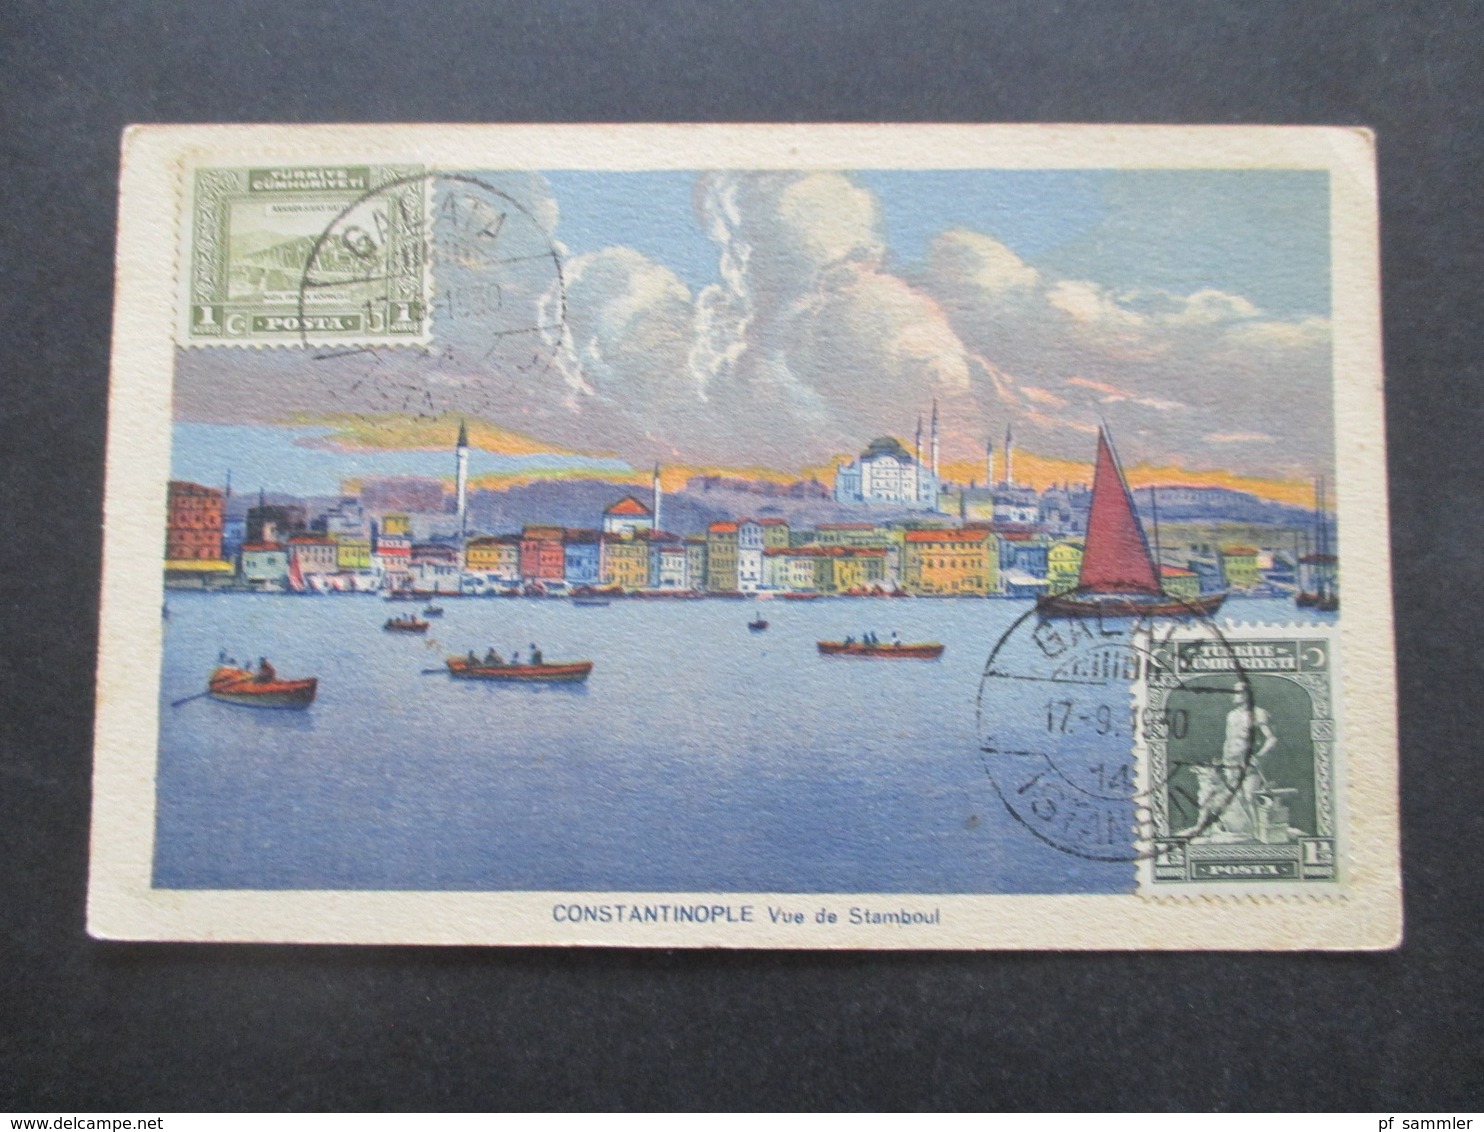 Türkei 1930 Bildseitig Frankierte AK Constantinople Vue De Stamboul Stempel Galata Nach Jugoslawien Gesendet - Storia Postale